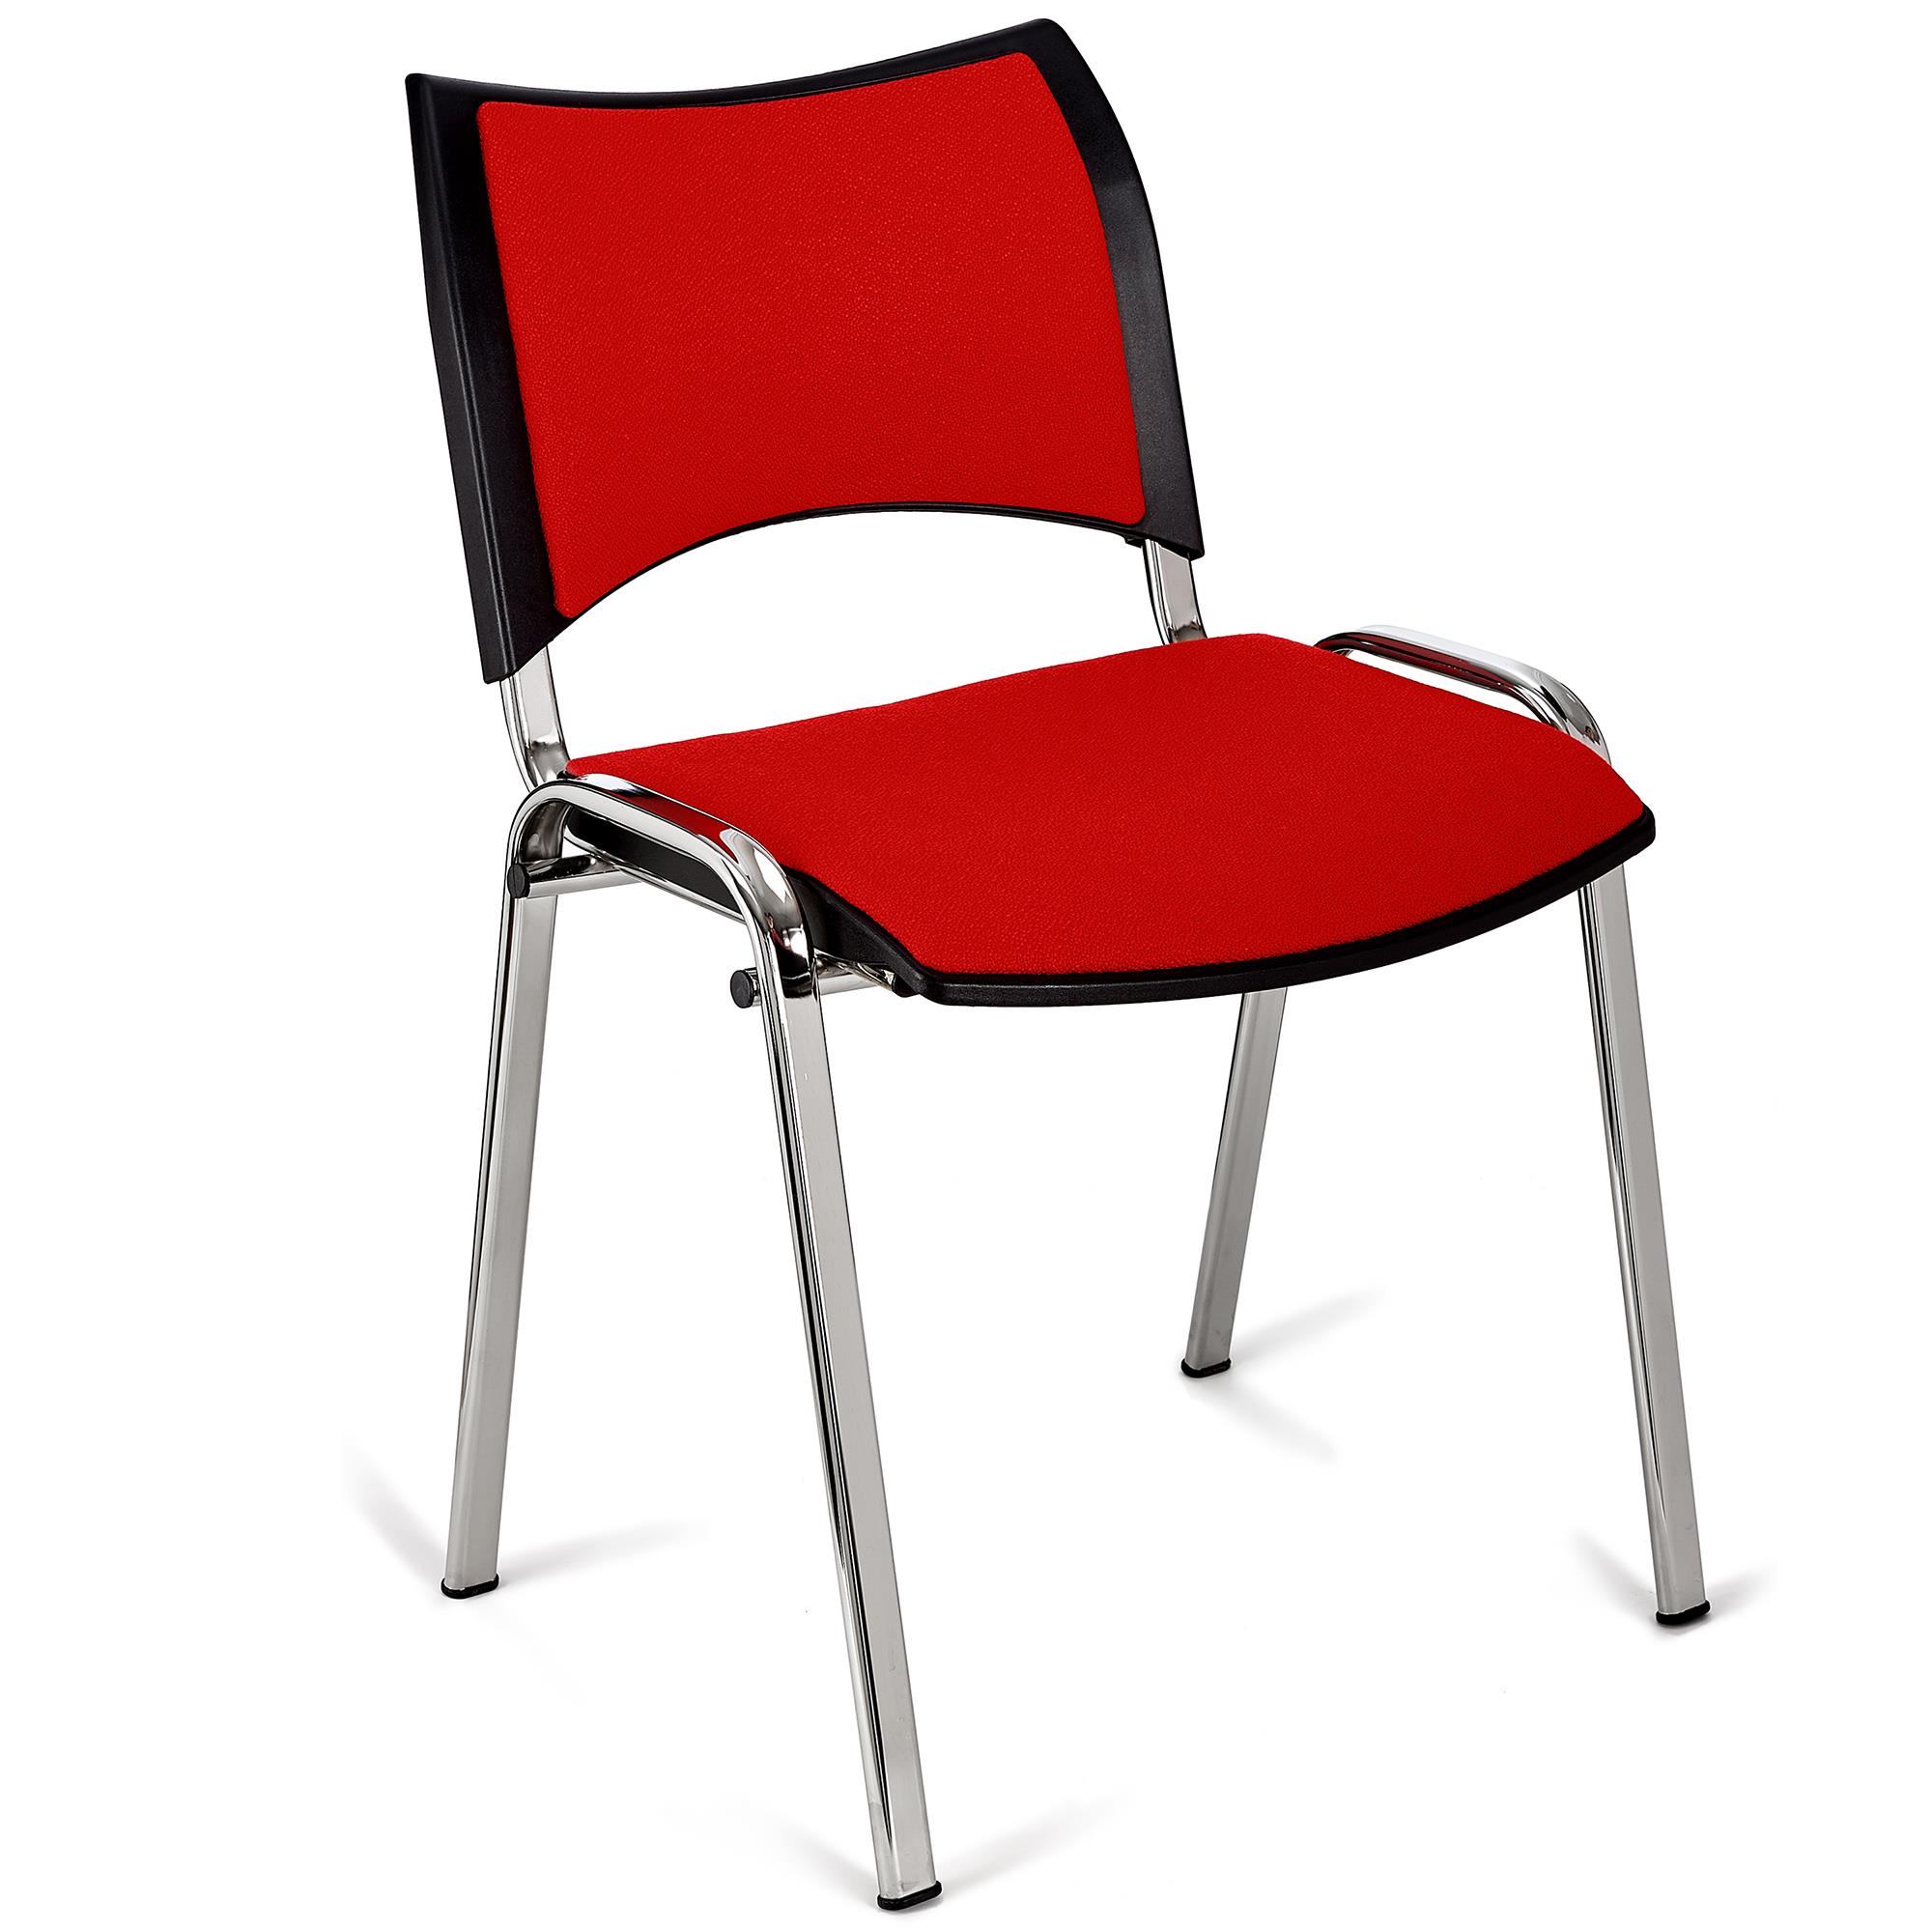 Cadeira de Visita ROMEL, Prática e Empilhável, Pernas Cromadas, Em Pano, Vermelho